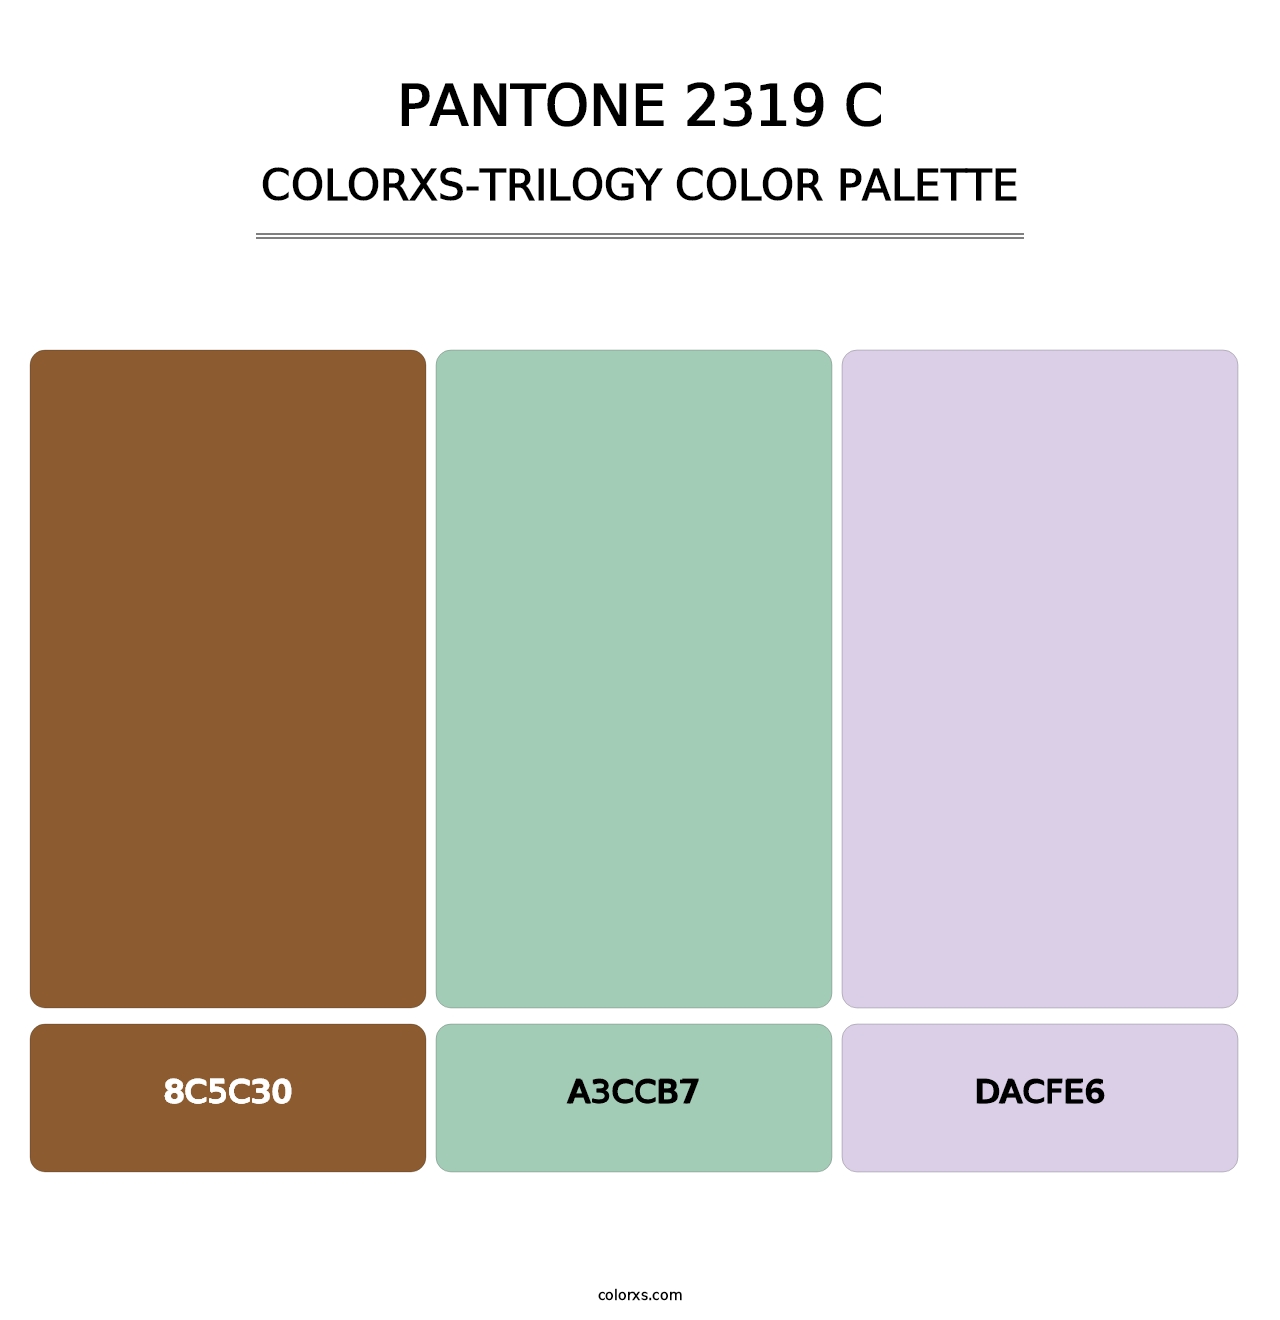 PANTONE 2319 C - Colorxs Trilogy Palette